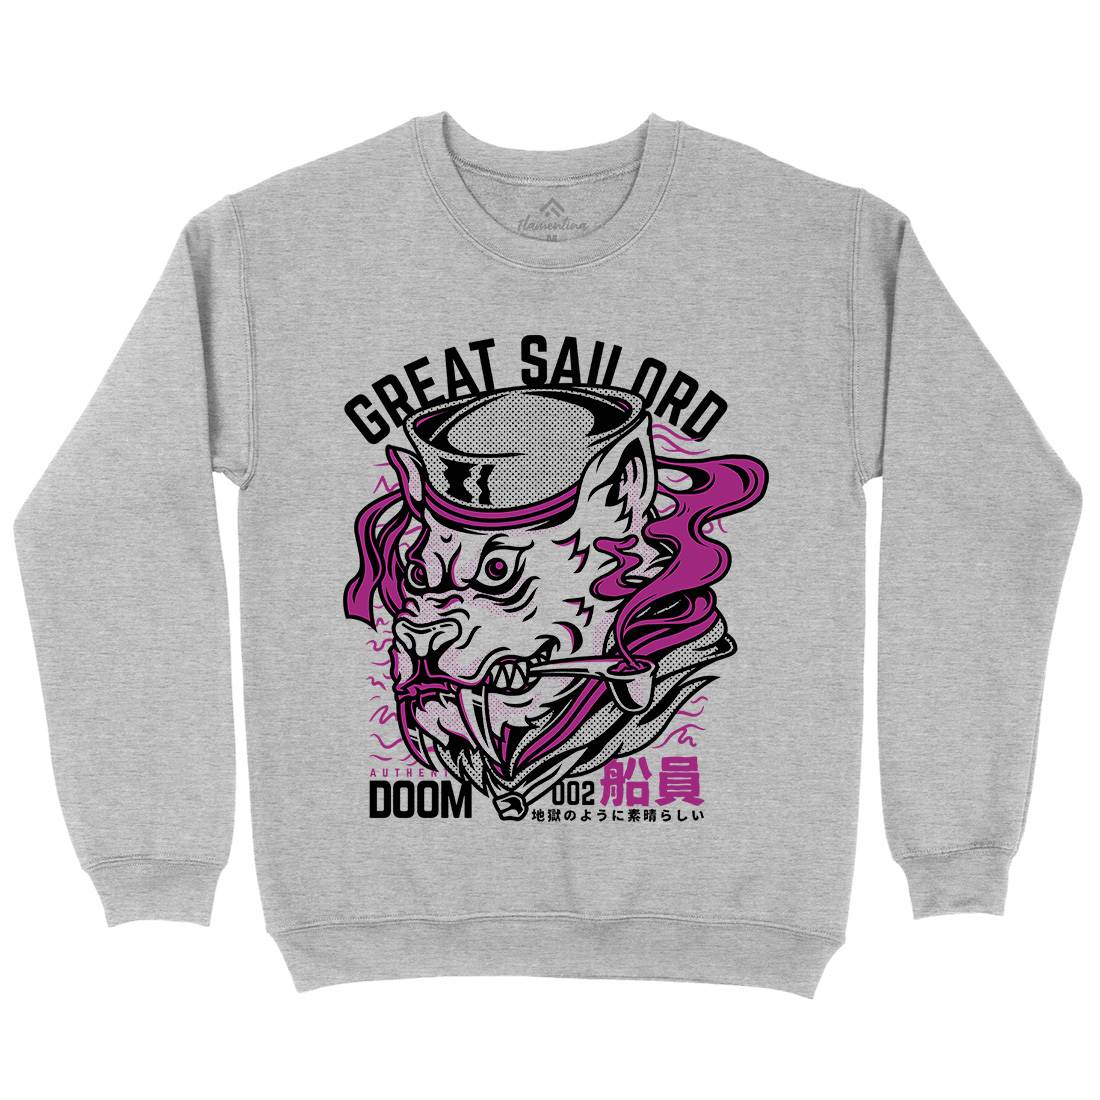 Great Sailord Mens Crew Neck Sweatshirt Navy D601